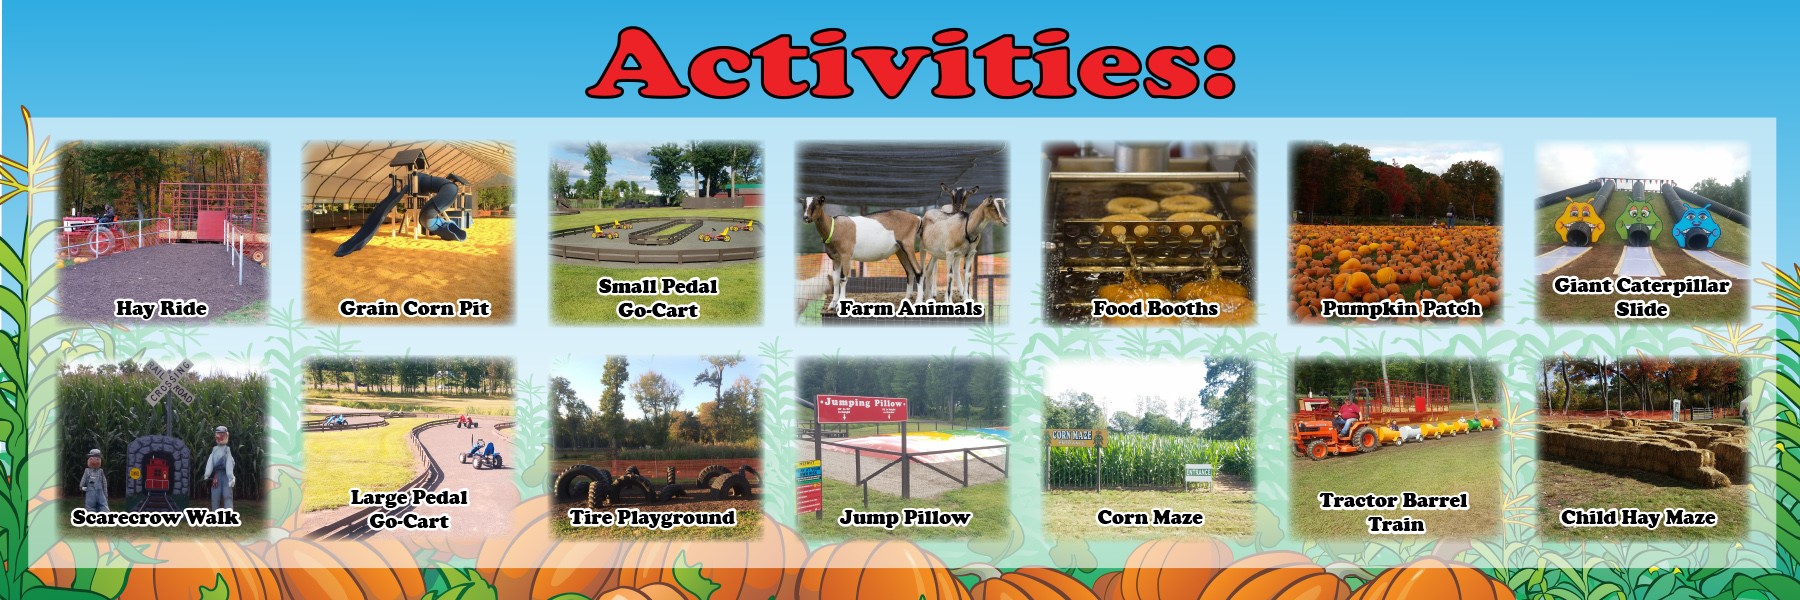 activities banner.jpg